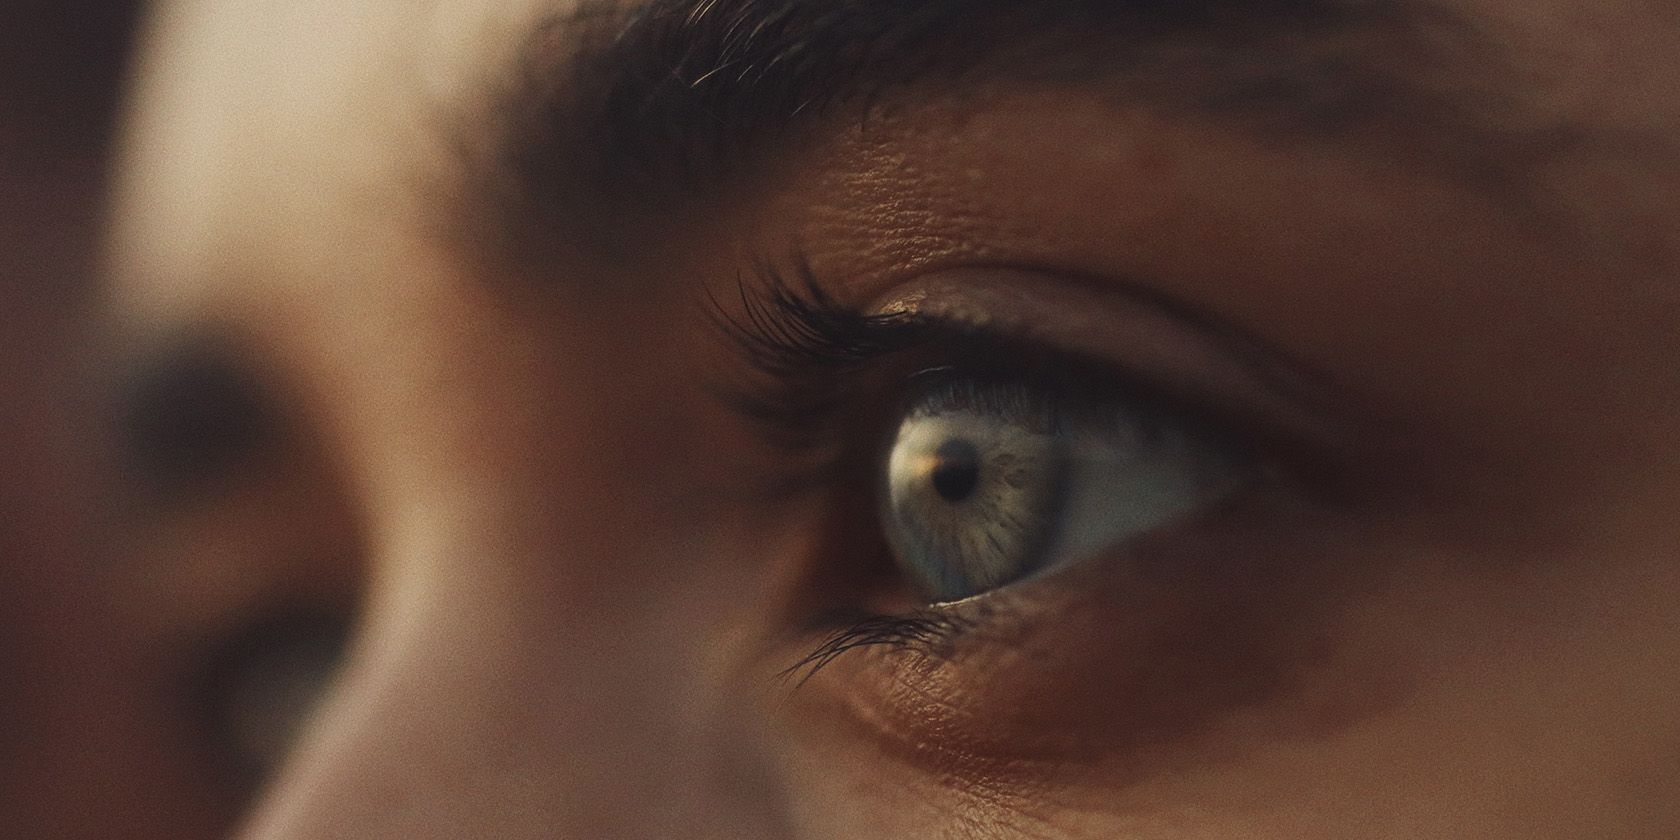 An extreme close-up shot of an eye.